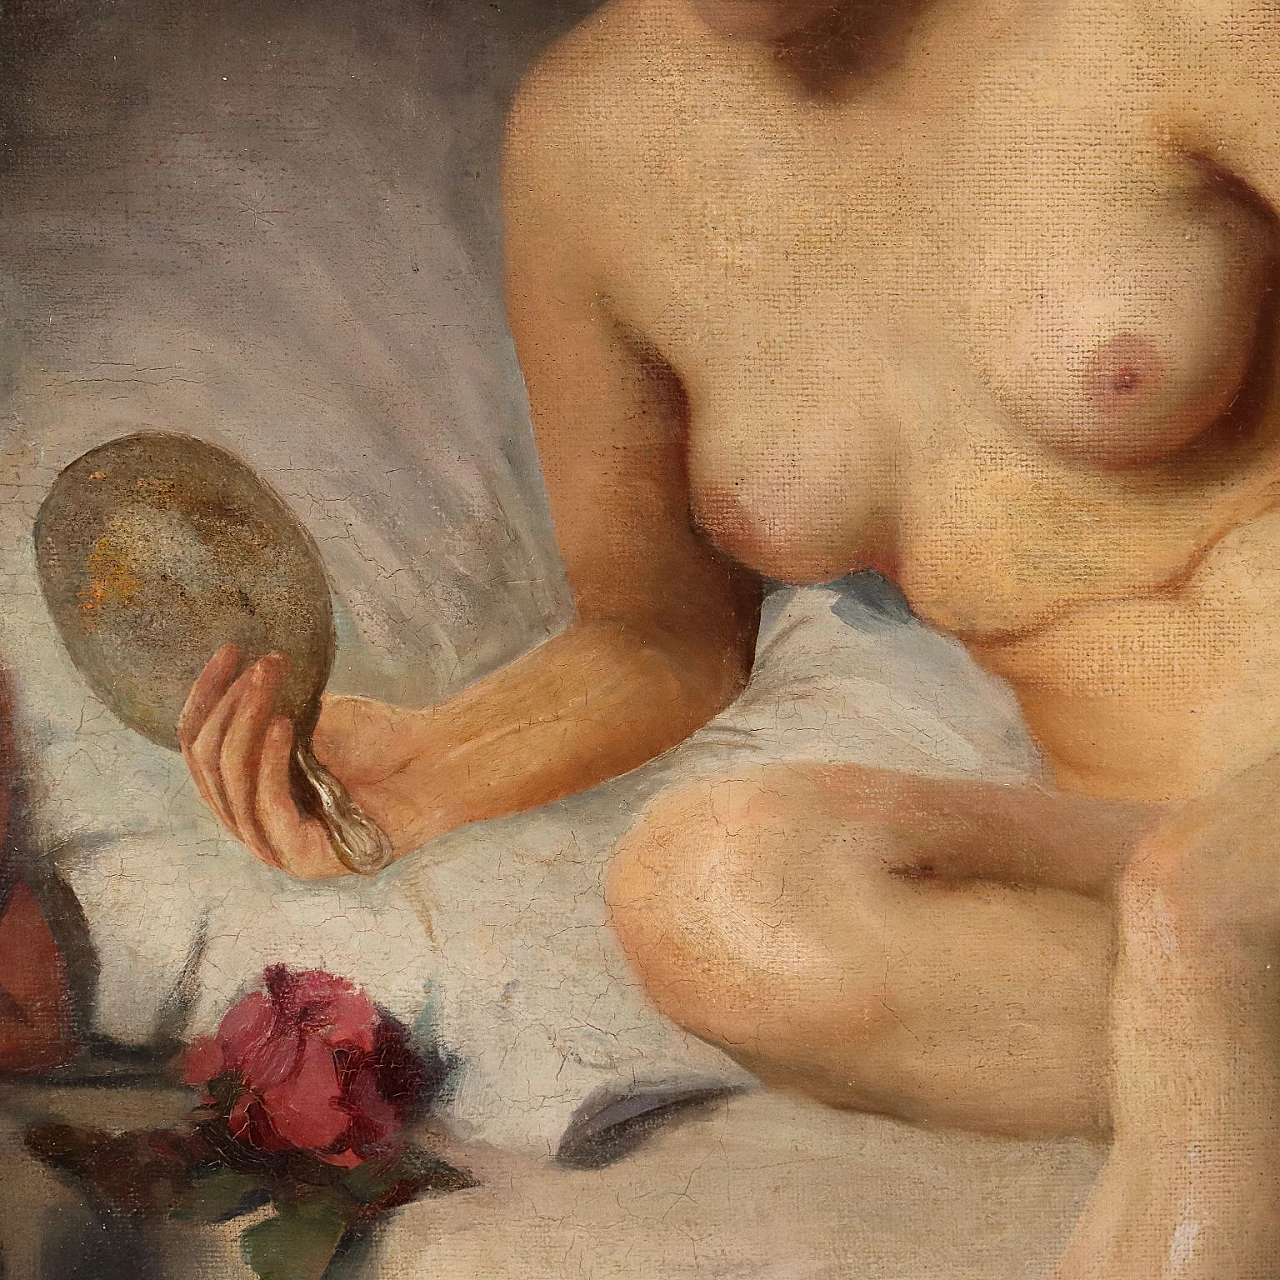 Papp Bertalan, nudo femminile, olio su tela, 1912 4